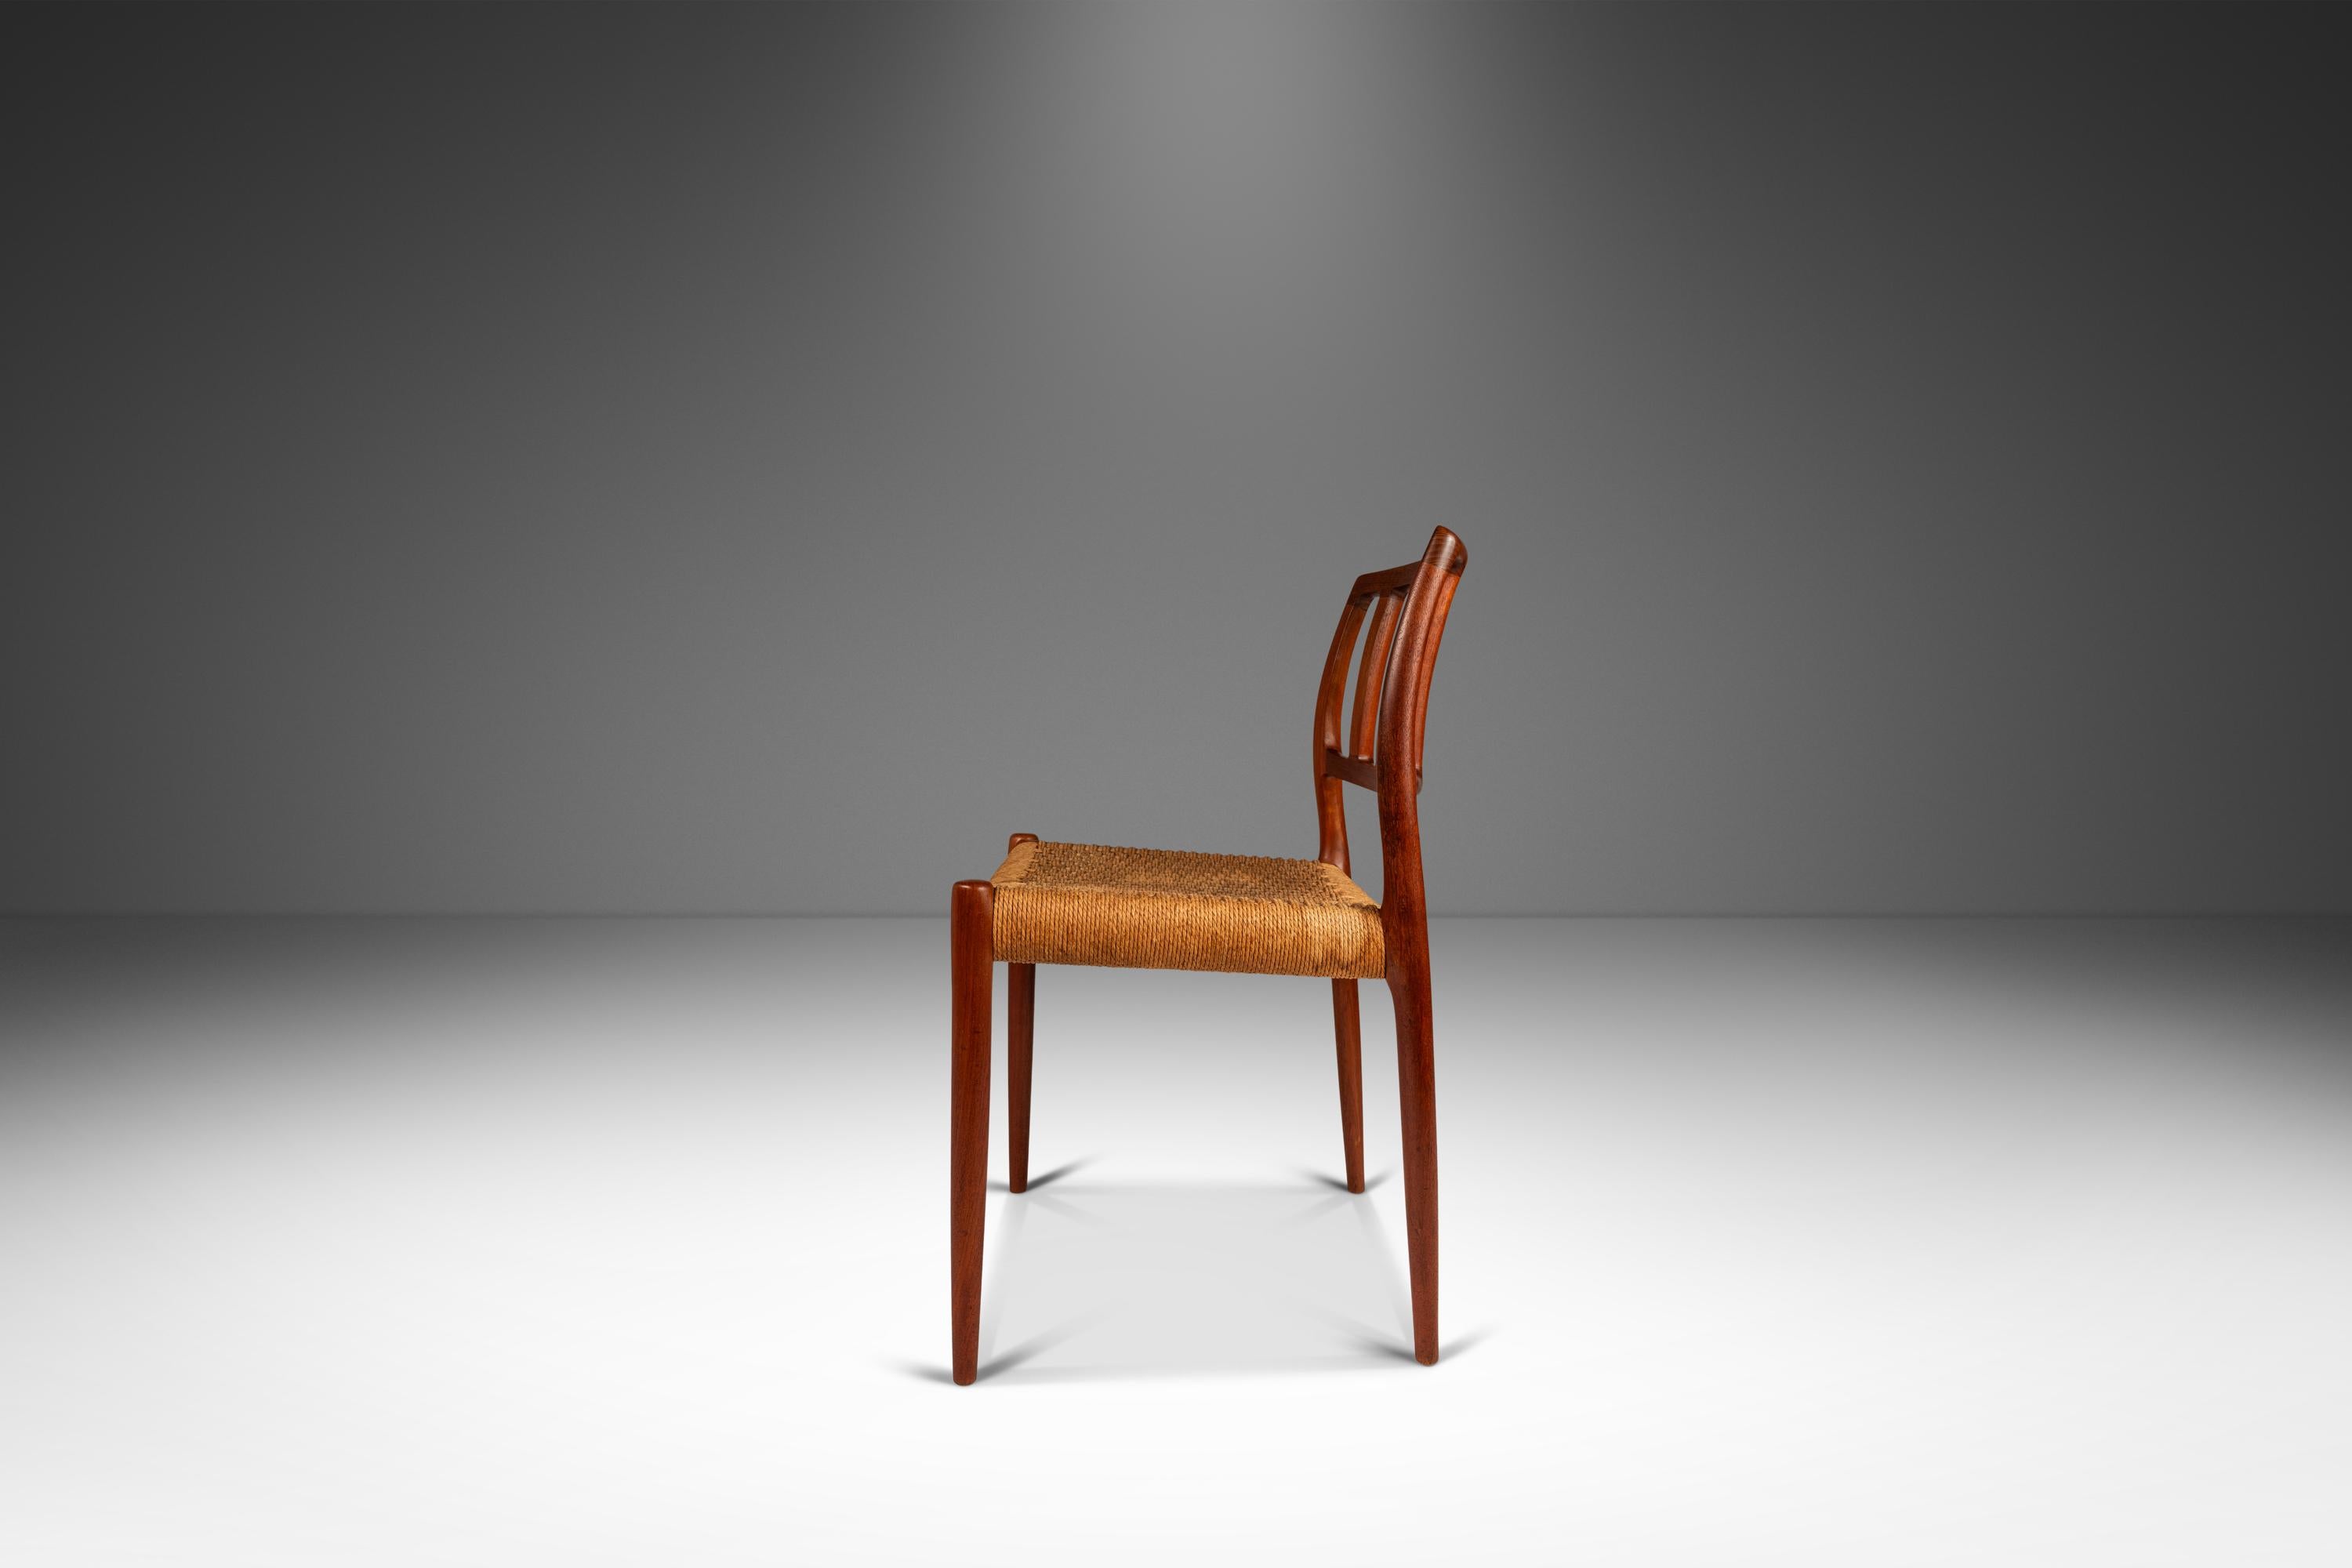 Wir präsentieren einen seltenen Niels Otto Moller Beistellstuhl Modell 83 für J.L. Mollers Mobelfabrik, hergestellt in den 1960er Jahren in Dänemark. Dieser atemberaubende Stuhl ist aus massivem Teakholz gefertigt und bringt die natürliche Schönheit